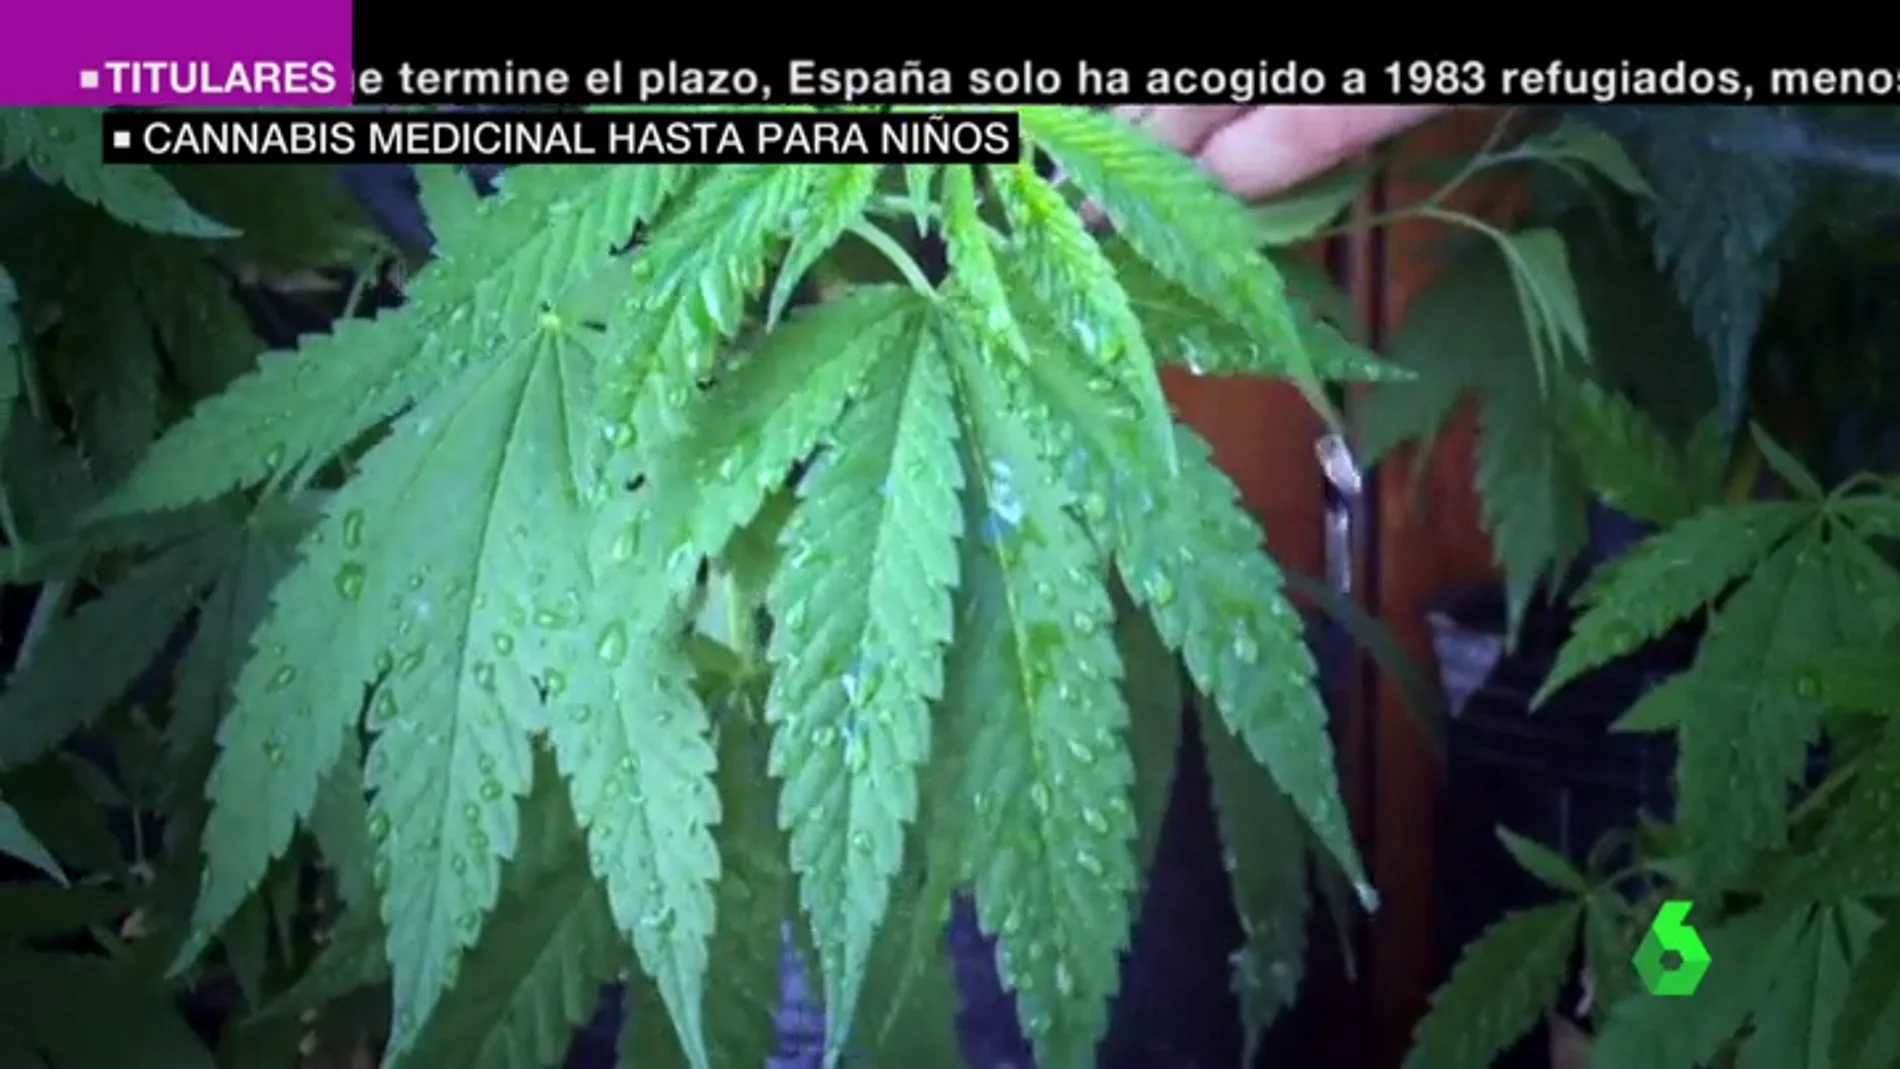  España debate la legalización de cannabis como uso medicinal